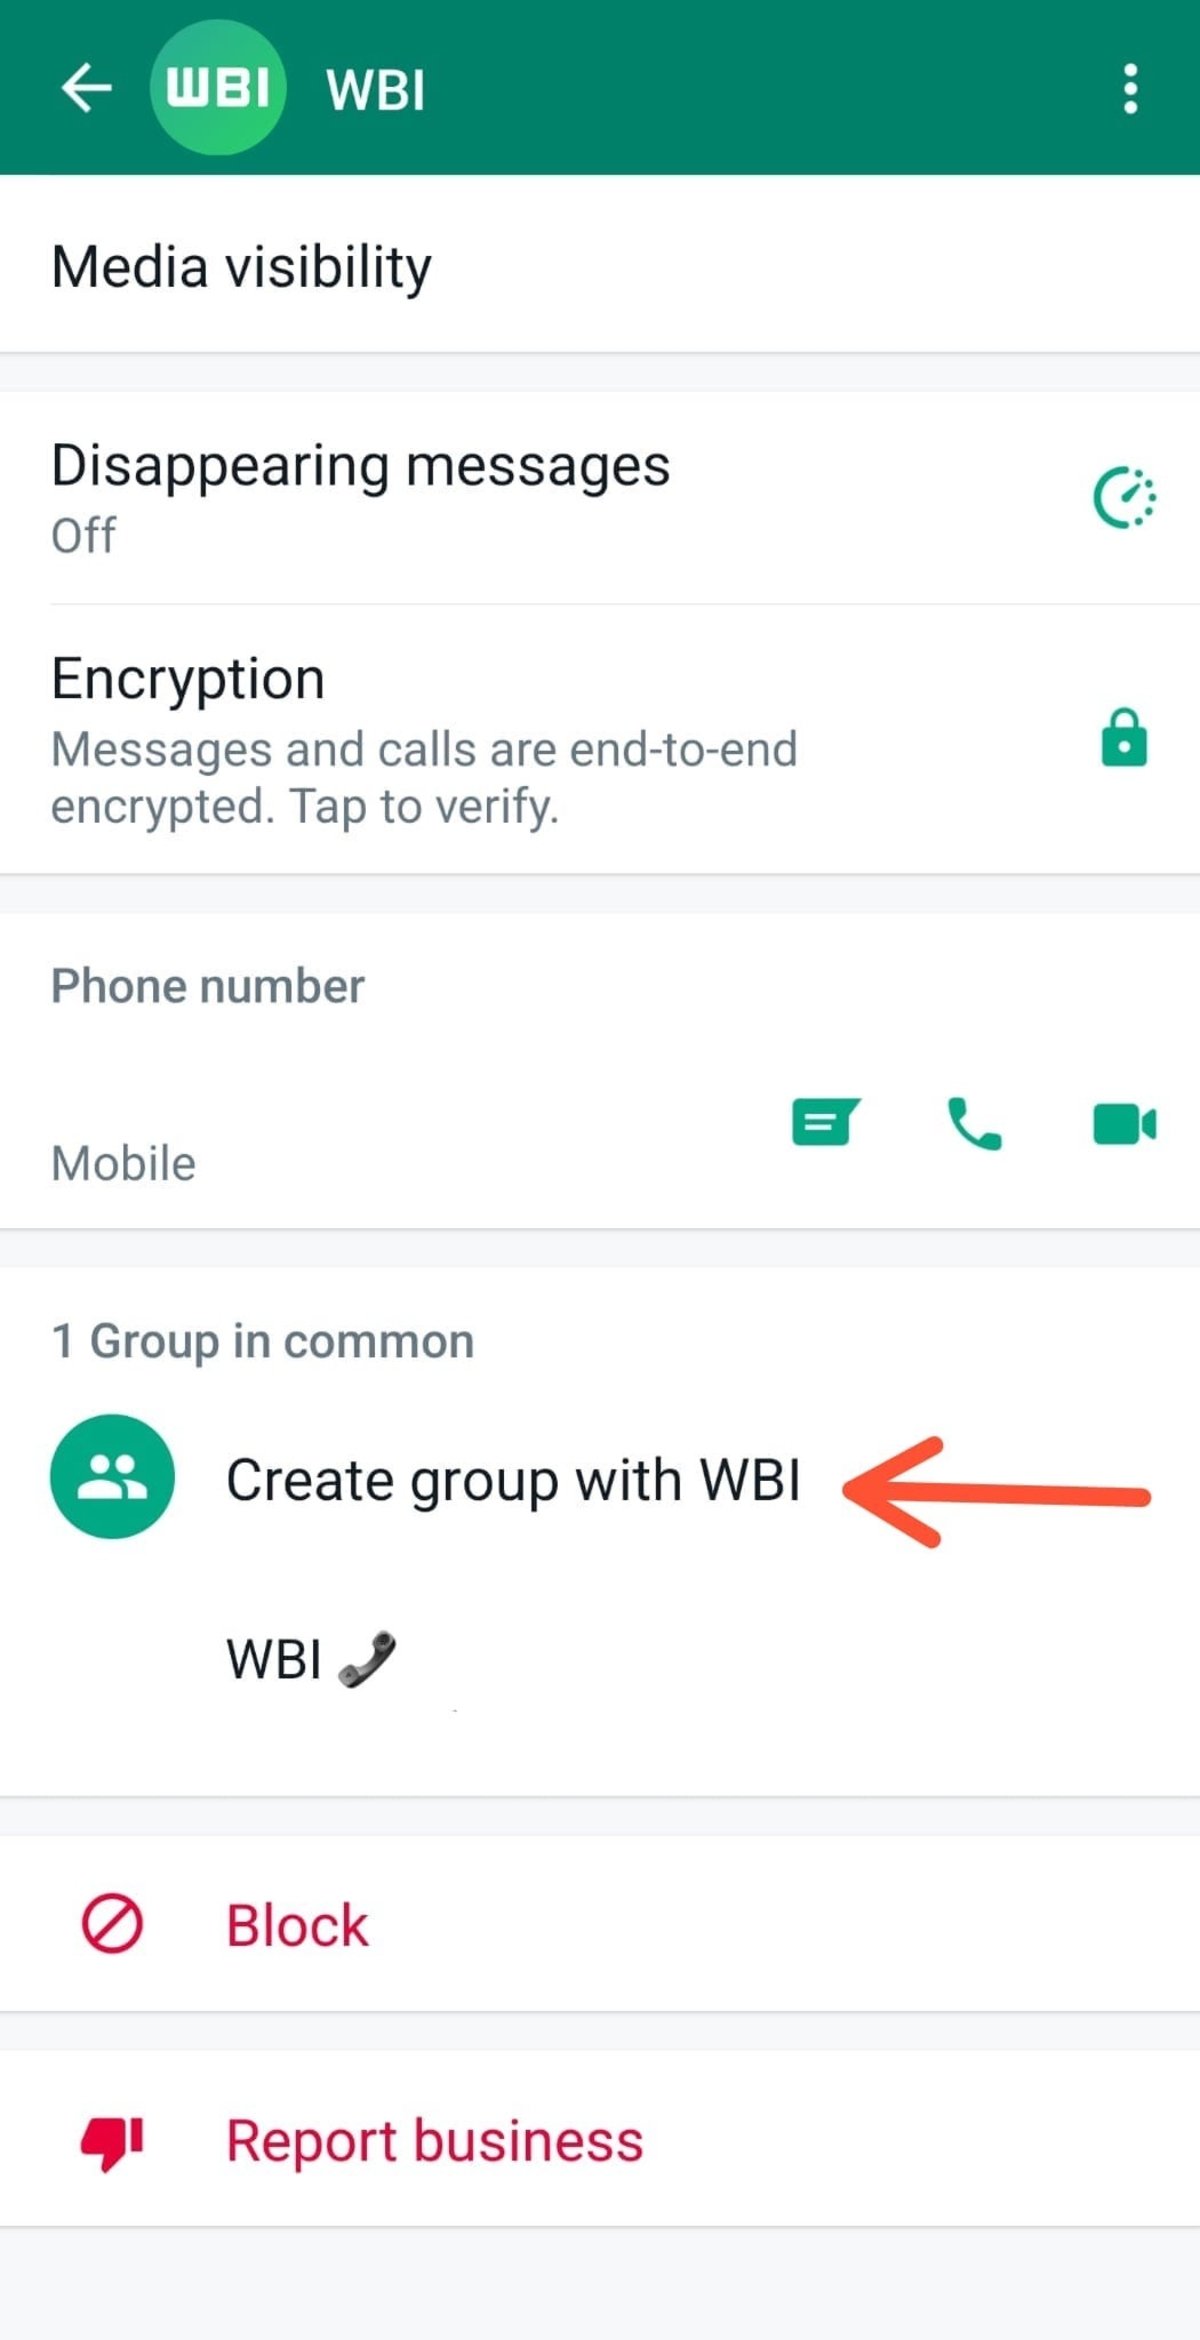 WhatsApp prepara 2 nuevas funciones para animar los grupos